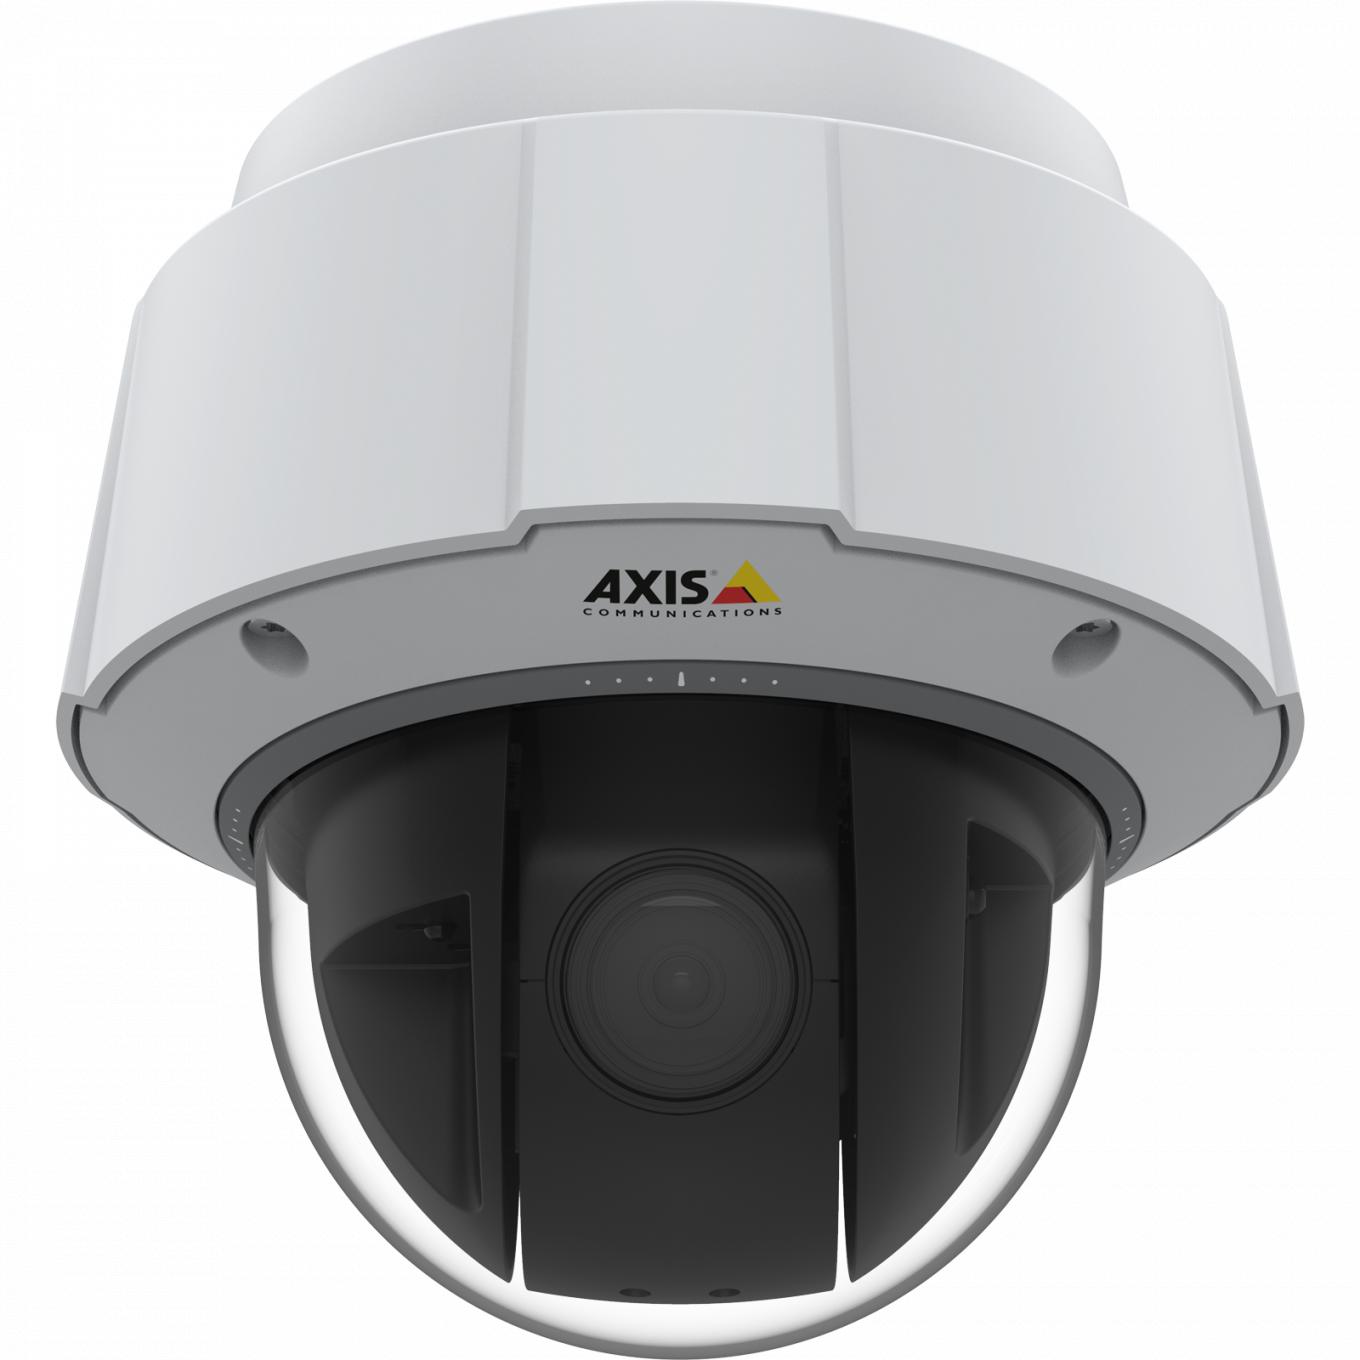 AXIS Q6075-E IP Camera è dotata di TPM, certificazione FIPS 140-2 livello 2. La telecamera è vista dal davanti.